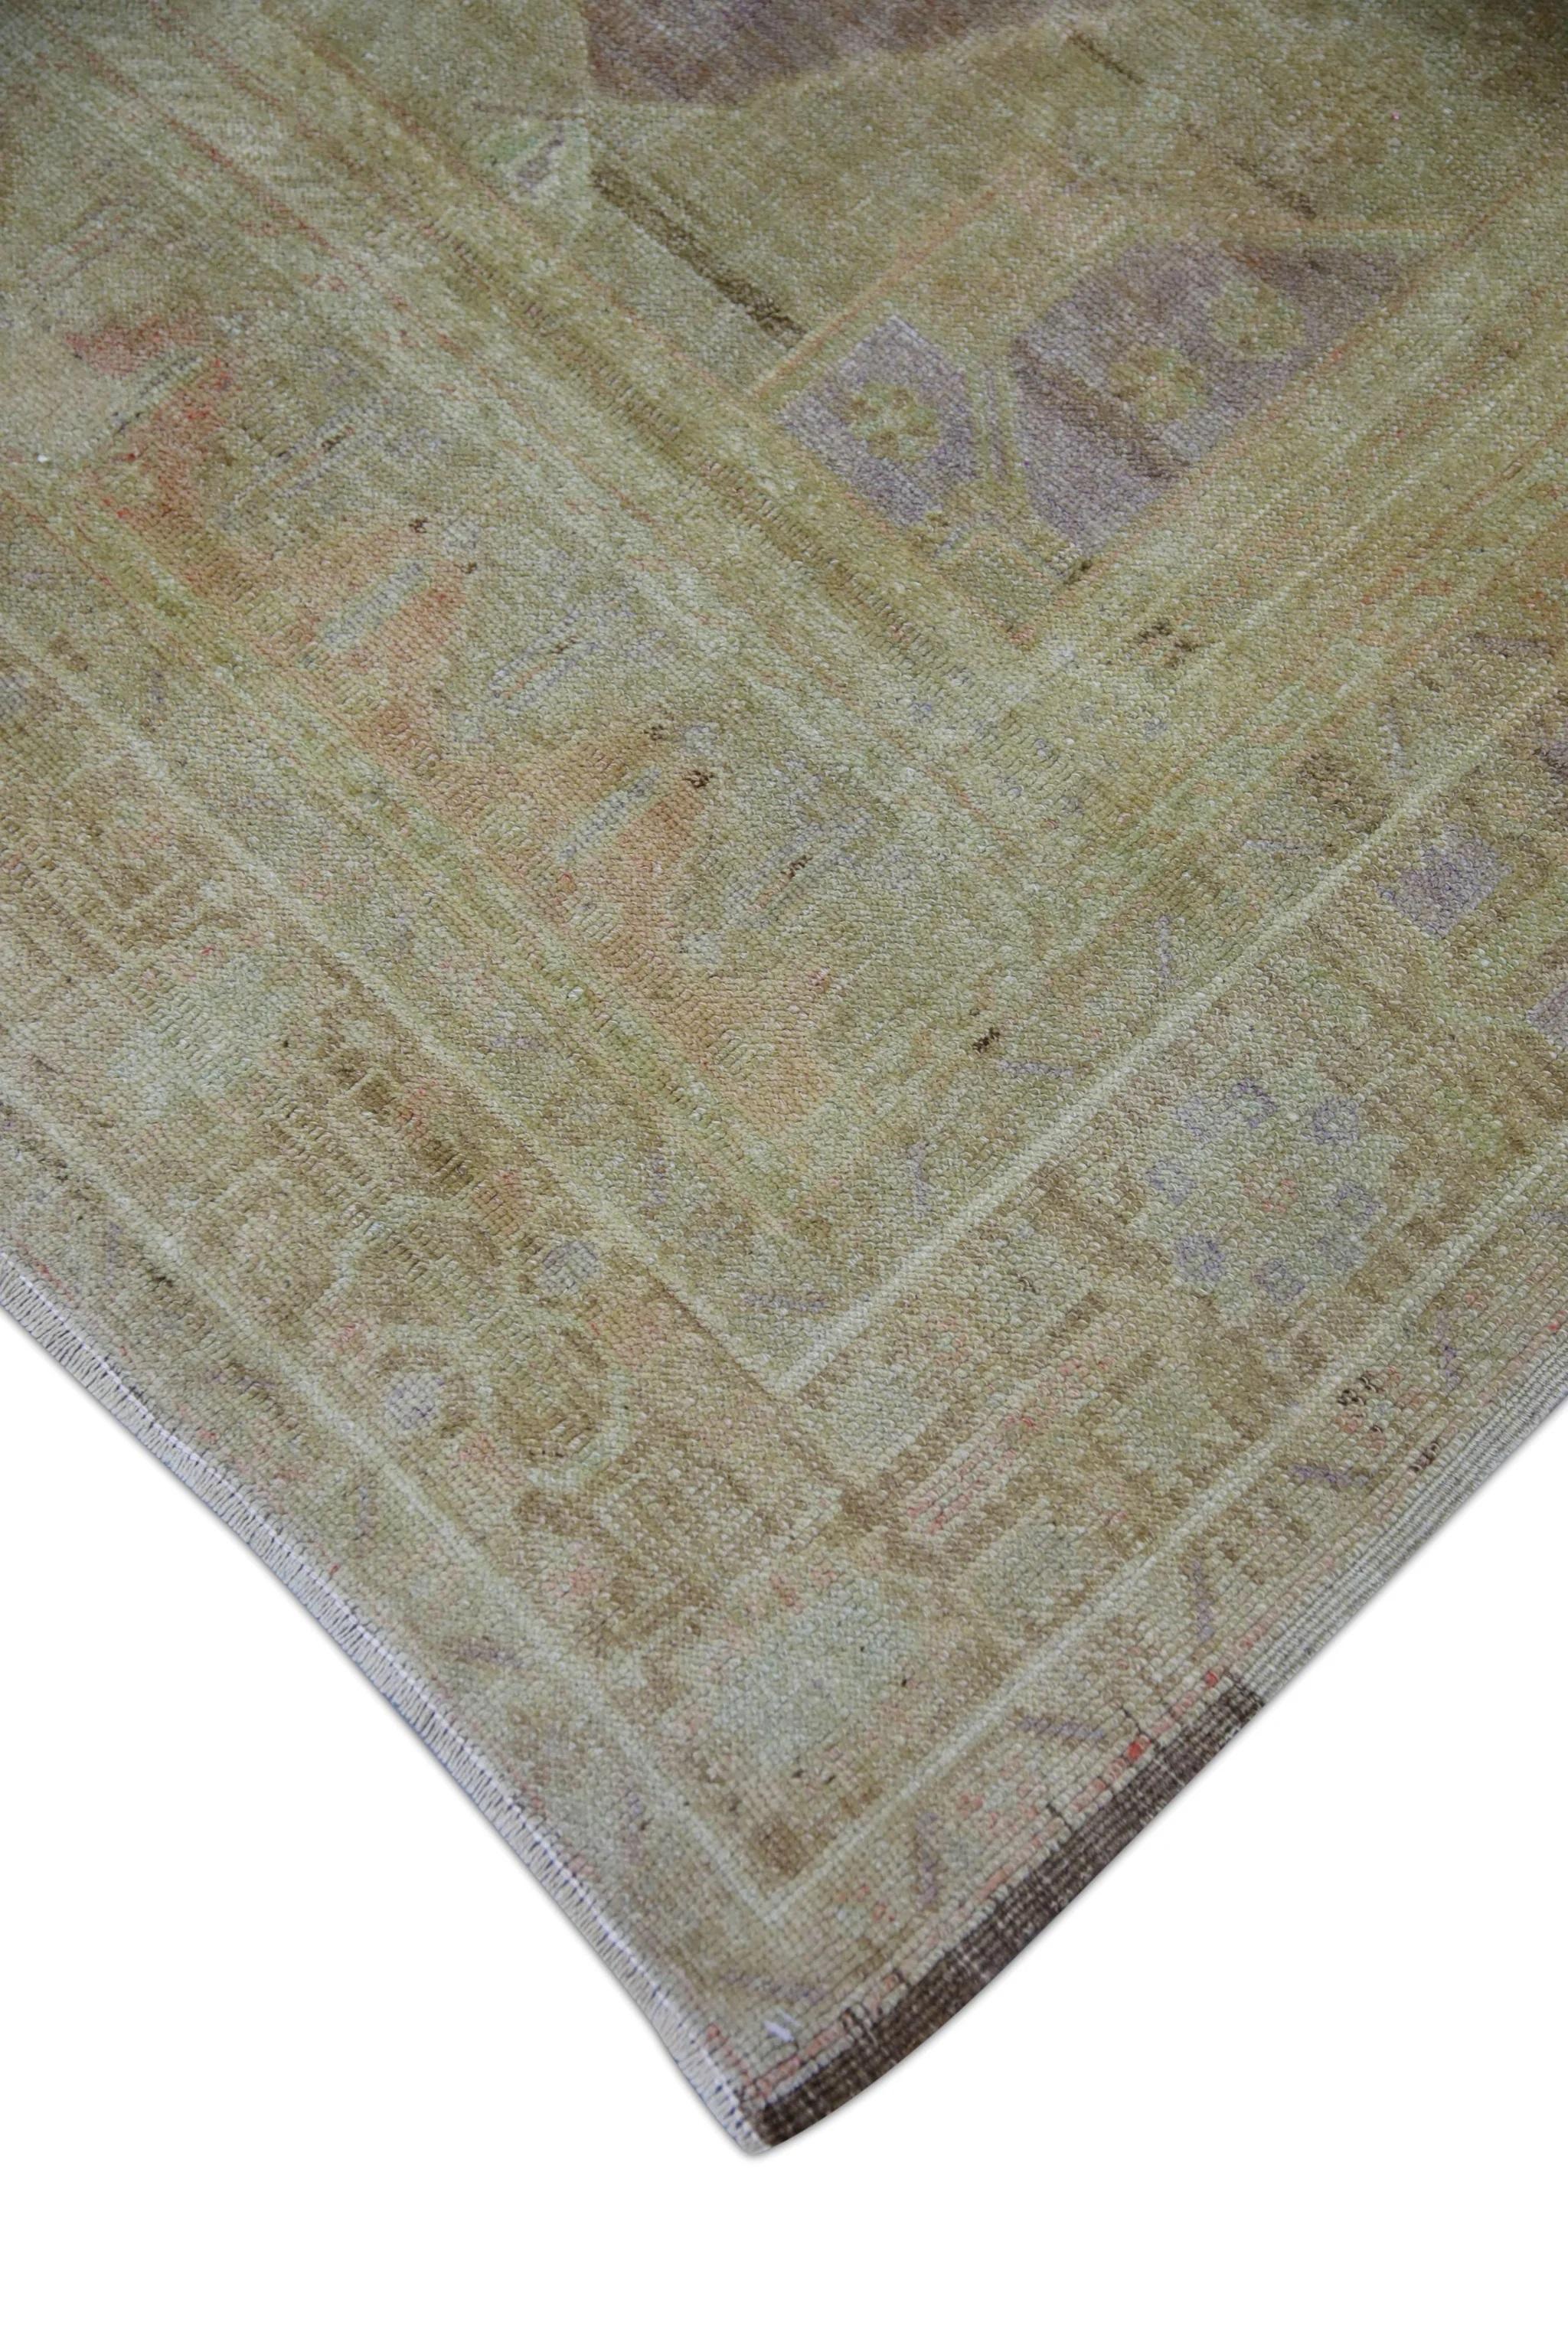 Cet exquis tapis Oushak turc vintage est un exemple stupéfiant de savoir-faire traditionnel et de beauté intemporelle. Noué à la main à partir de fibres de laine de qualité supérieure, ce tapis présente des motifs complexes et des couleurs vives qui